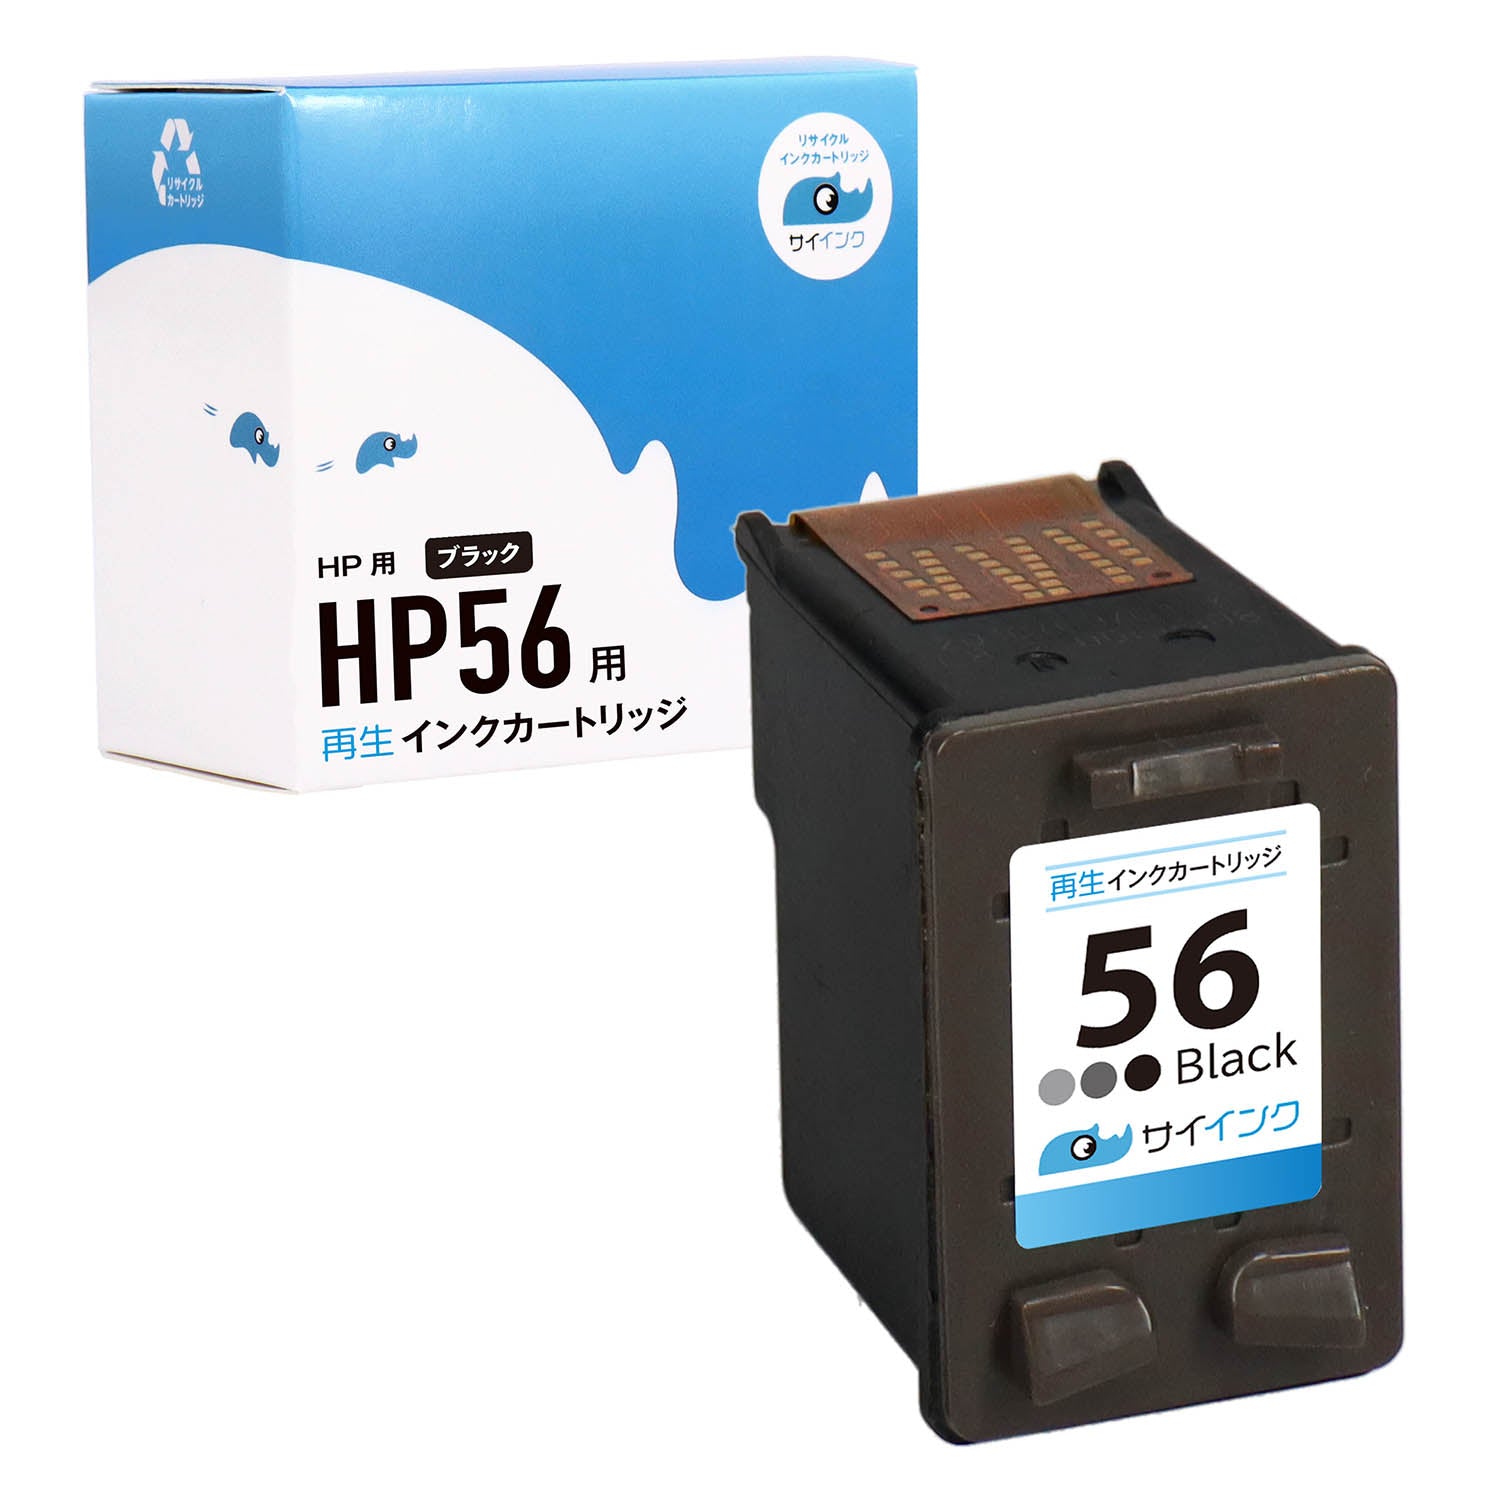 HP用 HP 56 リサイクルインク ブラック ラージサイズ